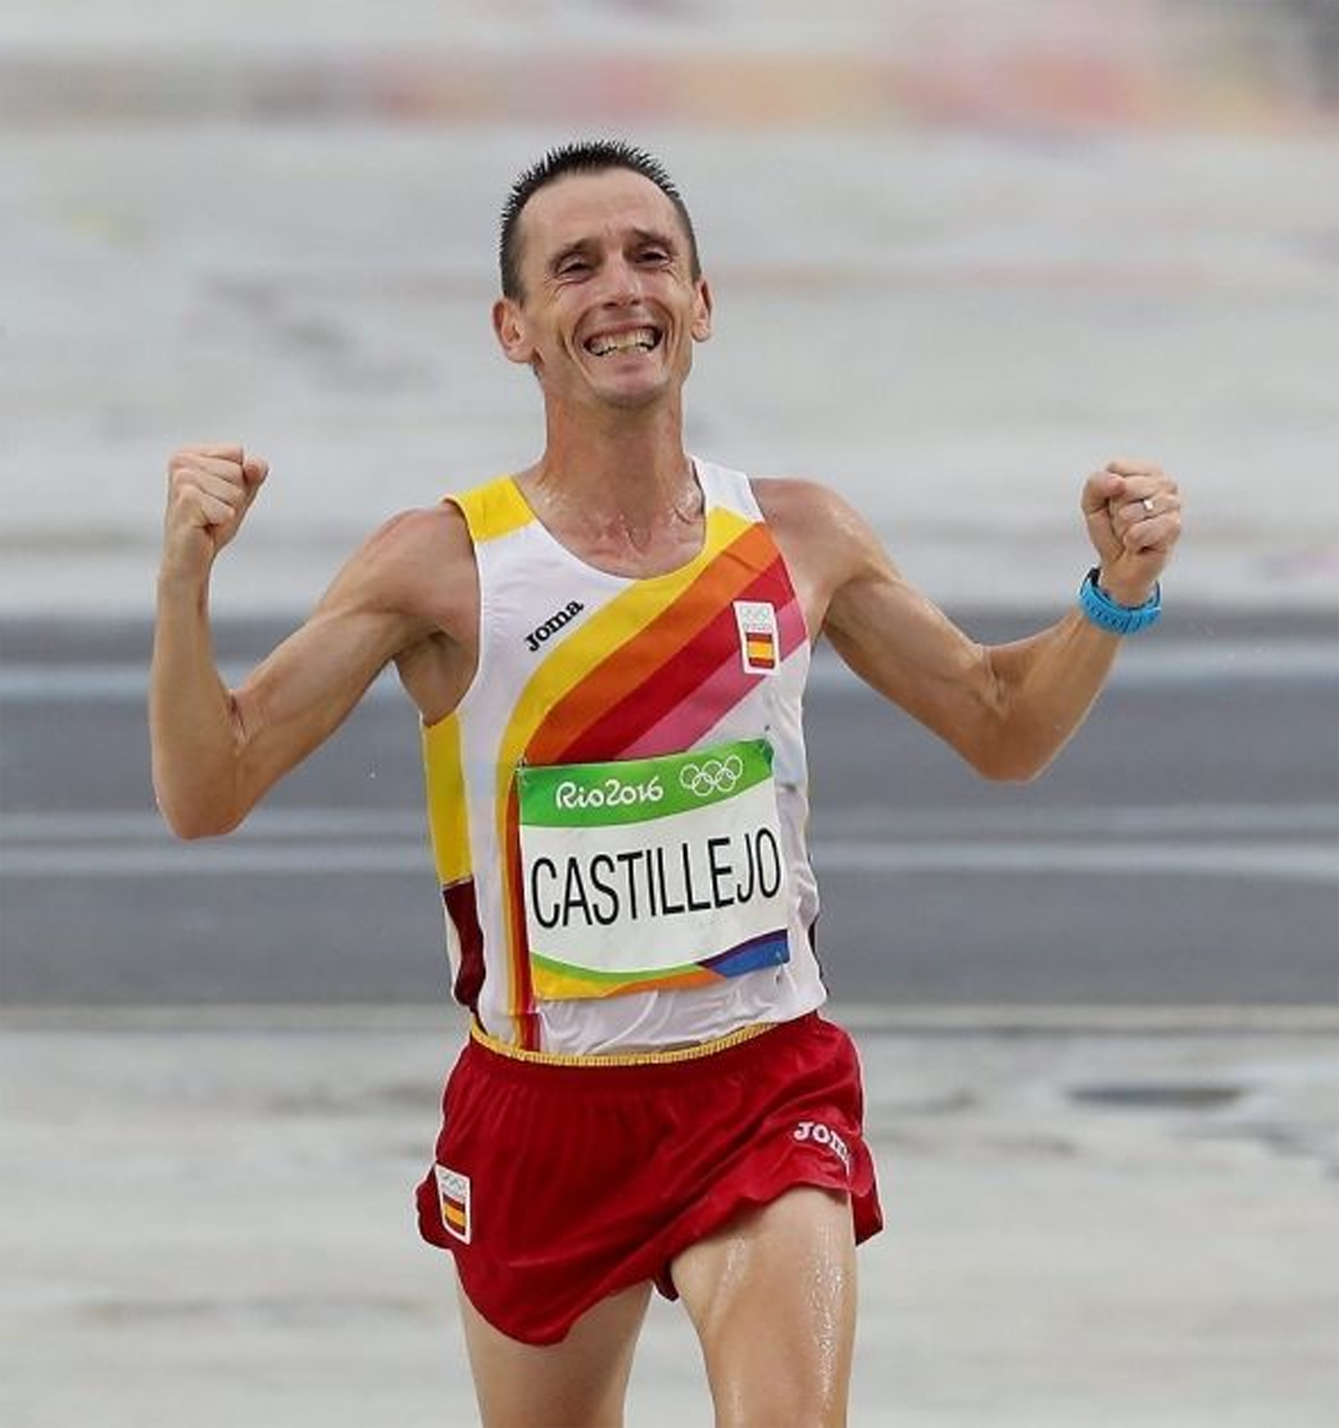 Carles Castillejo, a Rio 2016